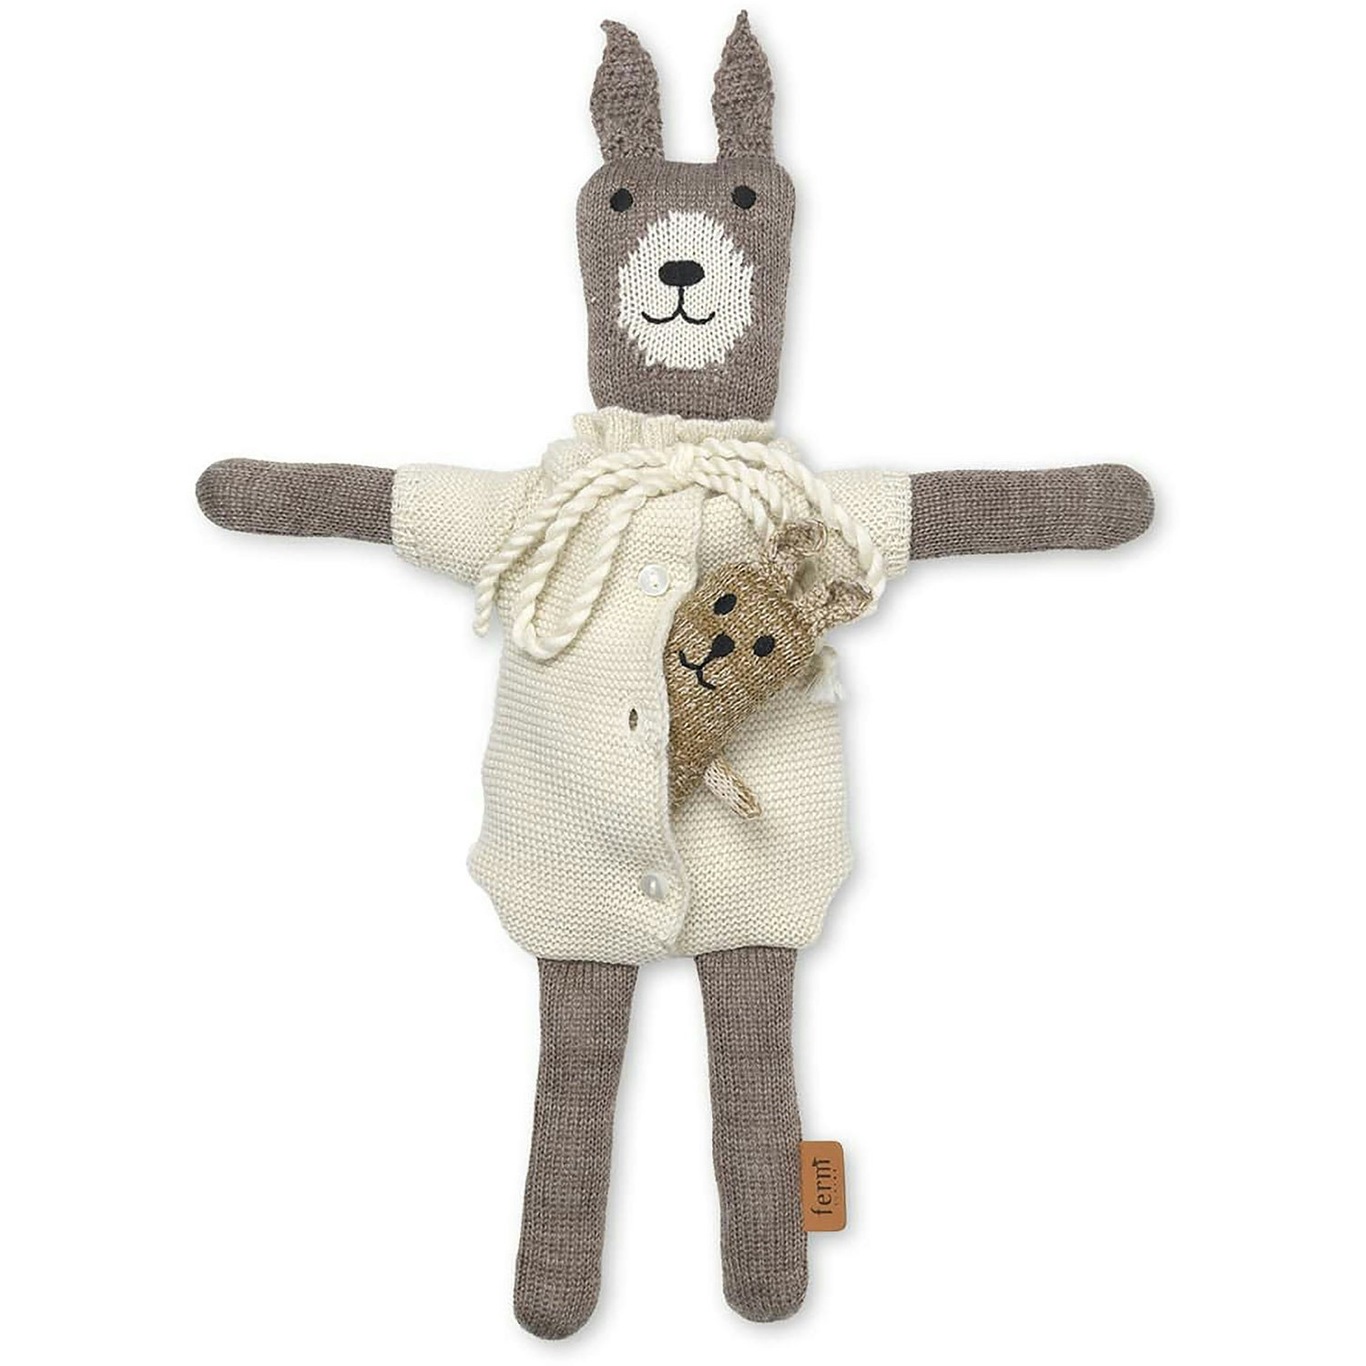 Wool Plush Animal Doll